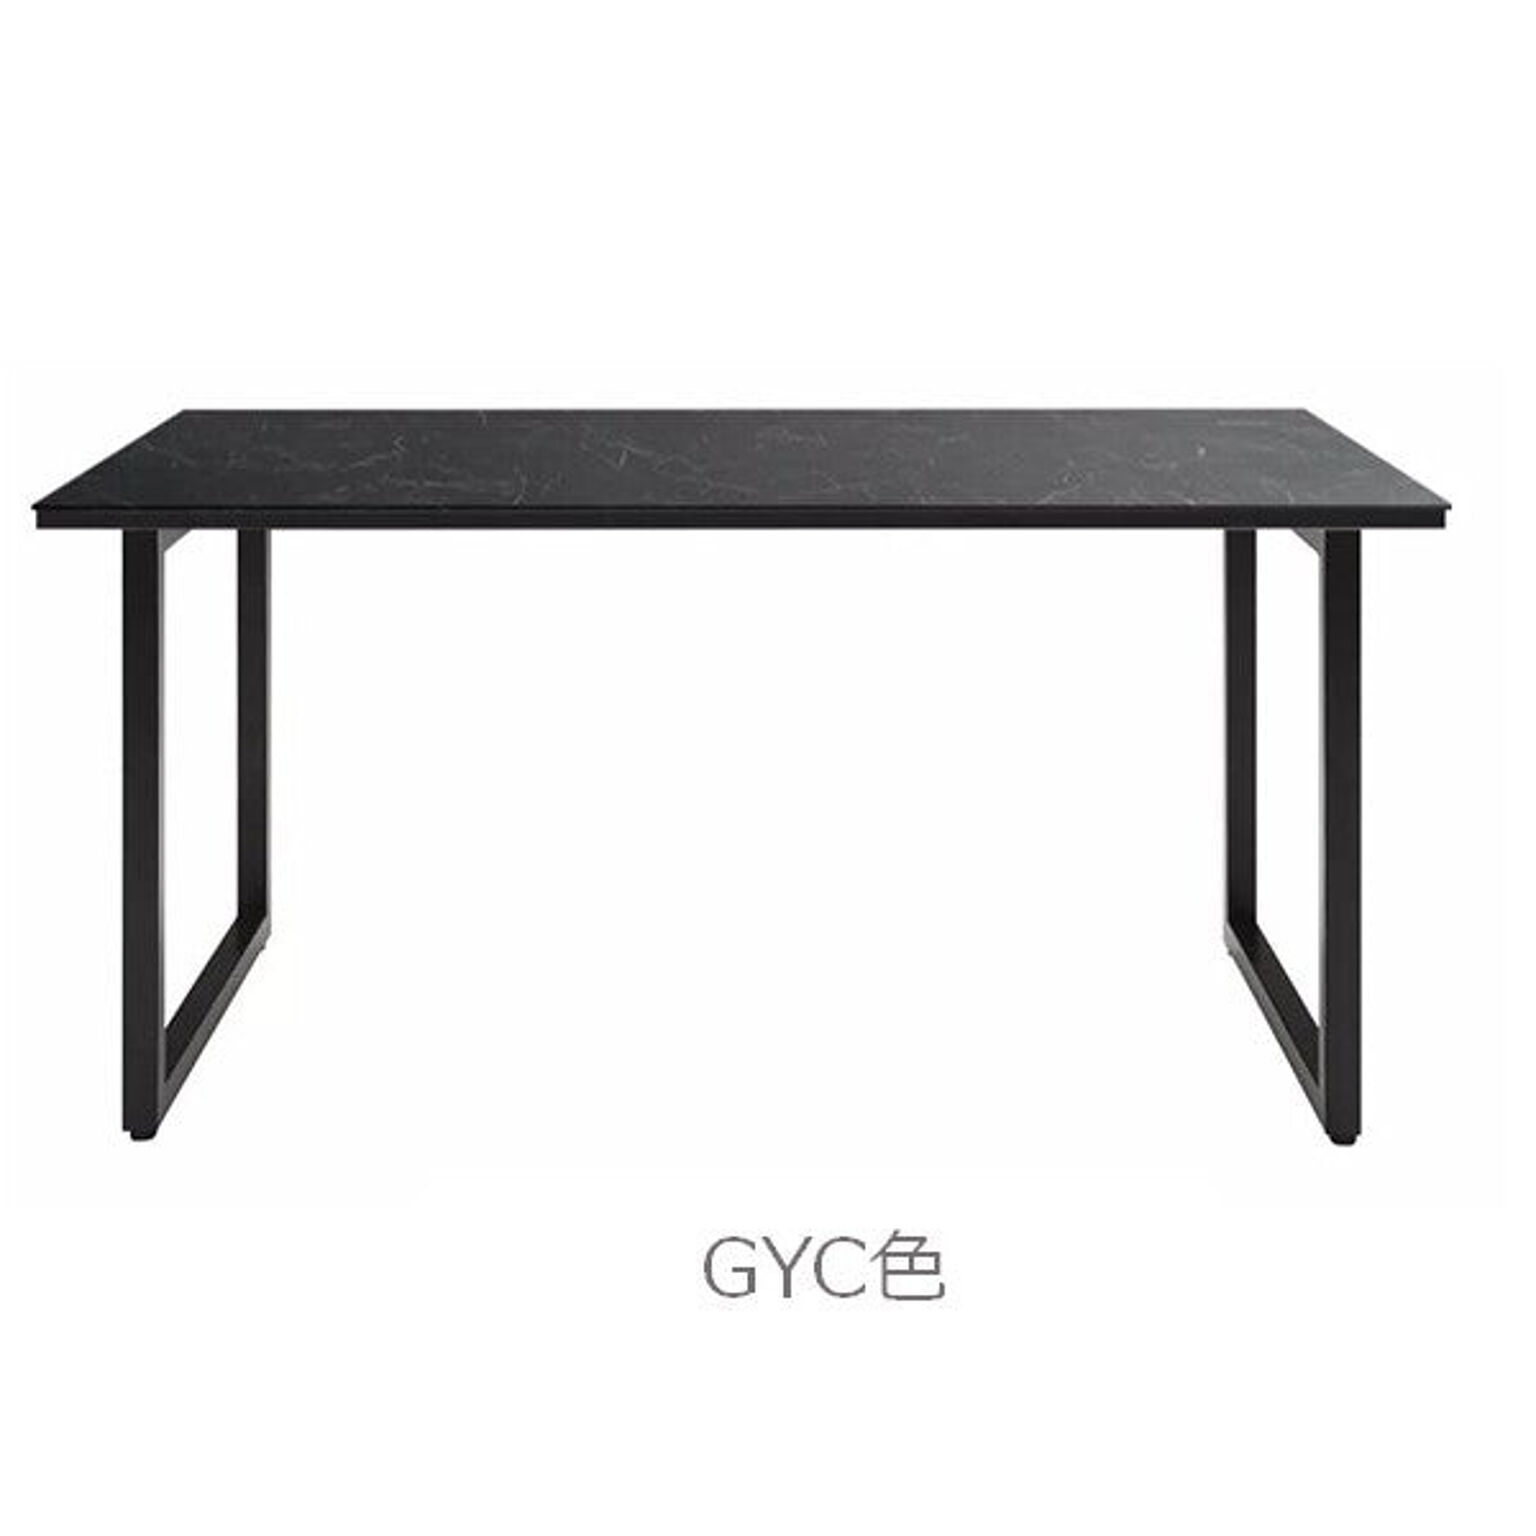 ダイニングテーブル 幅150 高さ72 セラミック天板 ブラックアイアン シンプル スッキリ デザイン 作業テーブル RAMA ラマ RMA-150